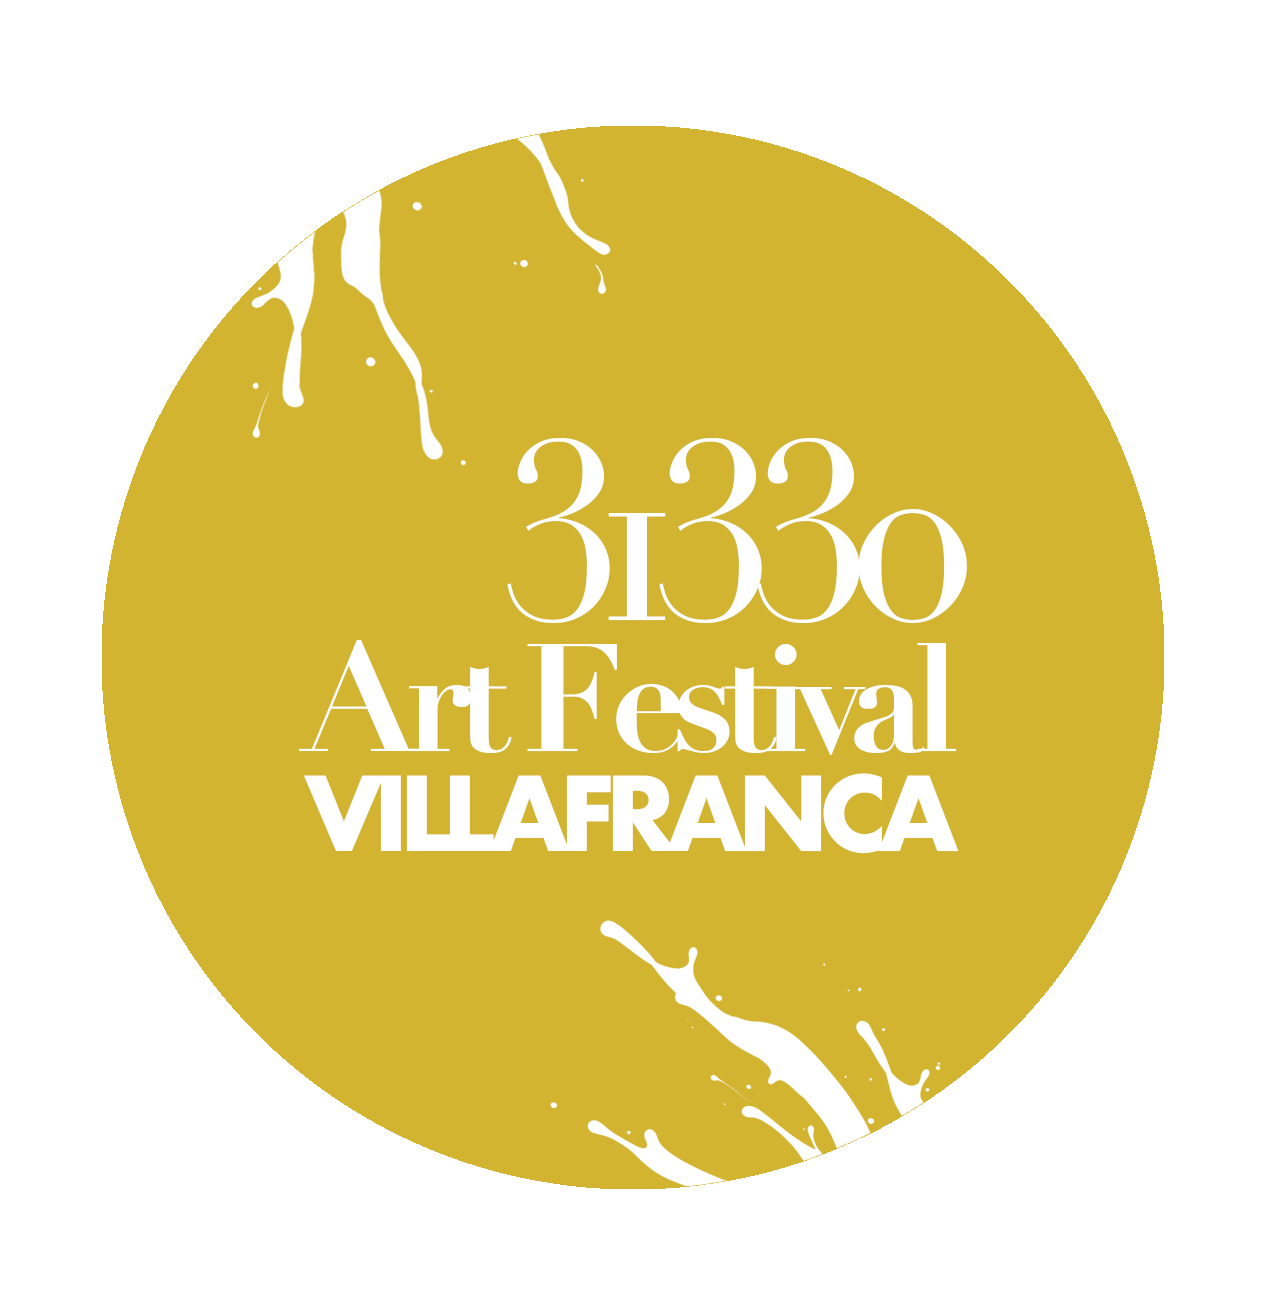 31330 Art Festival